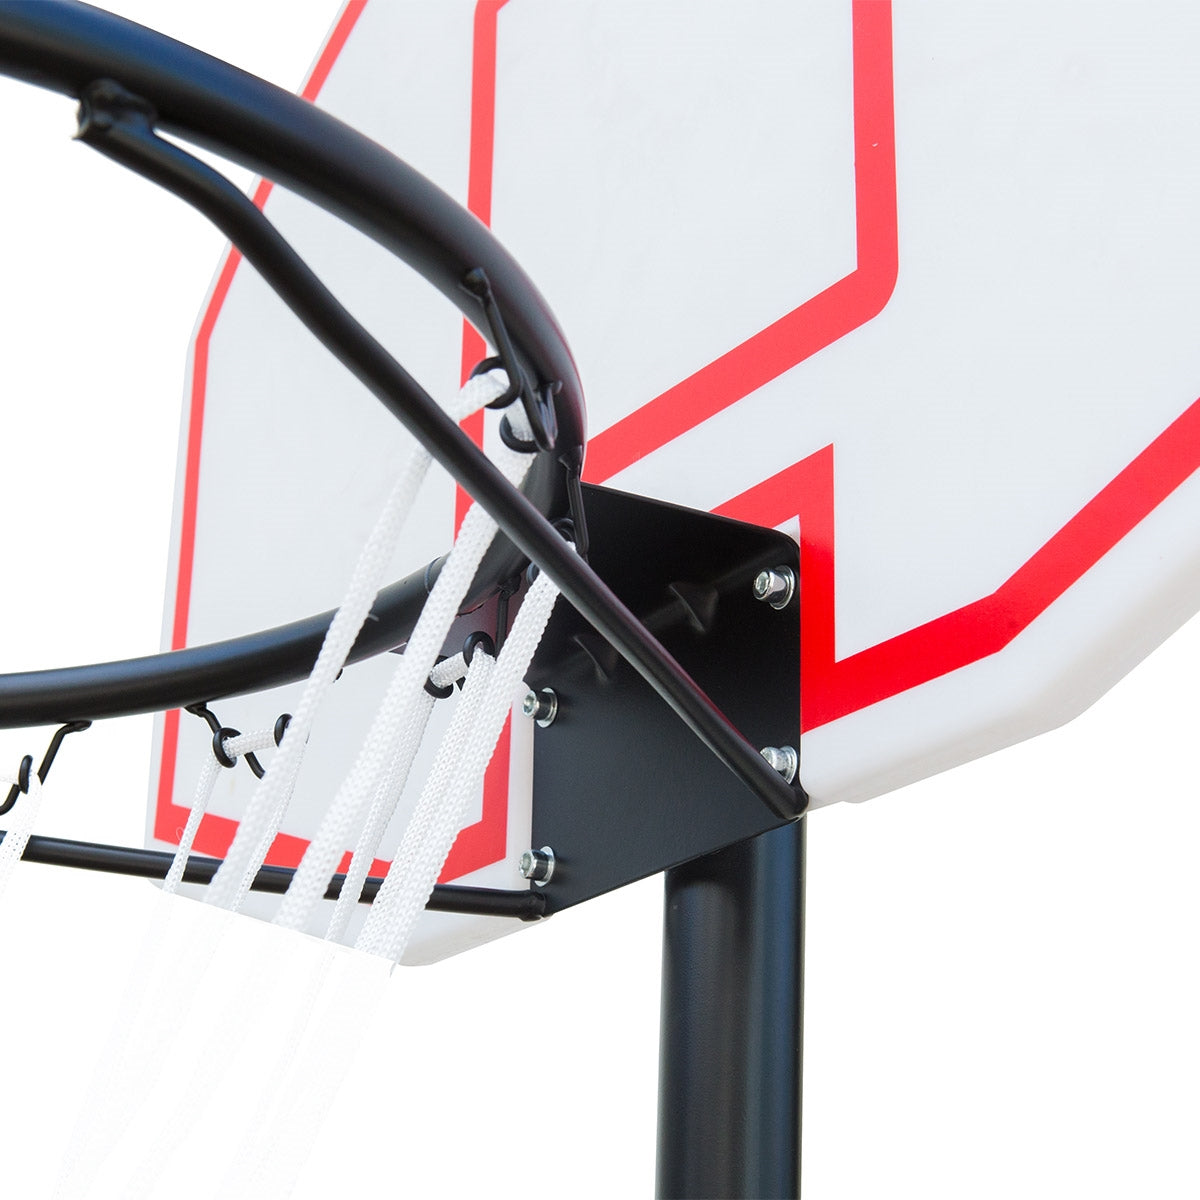 Basketballkurv stander m. hjul til haven - Hvid/Rød